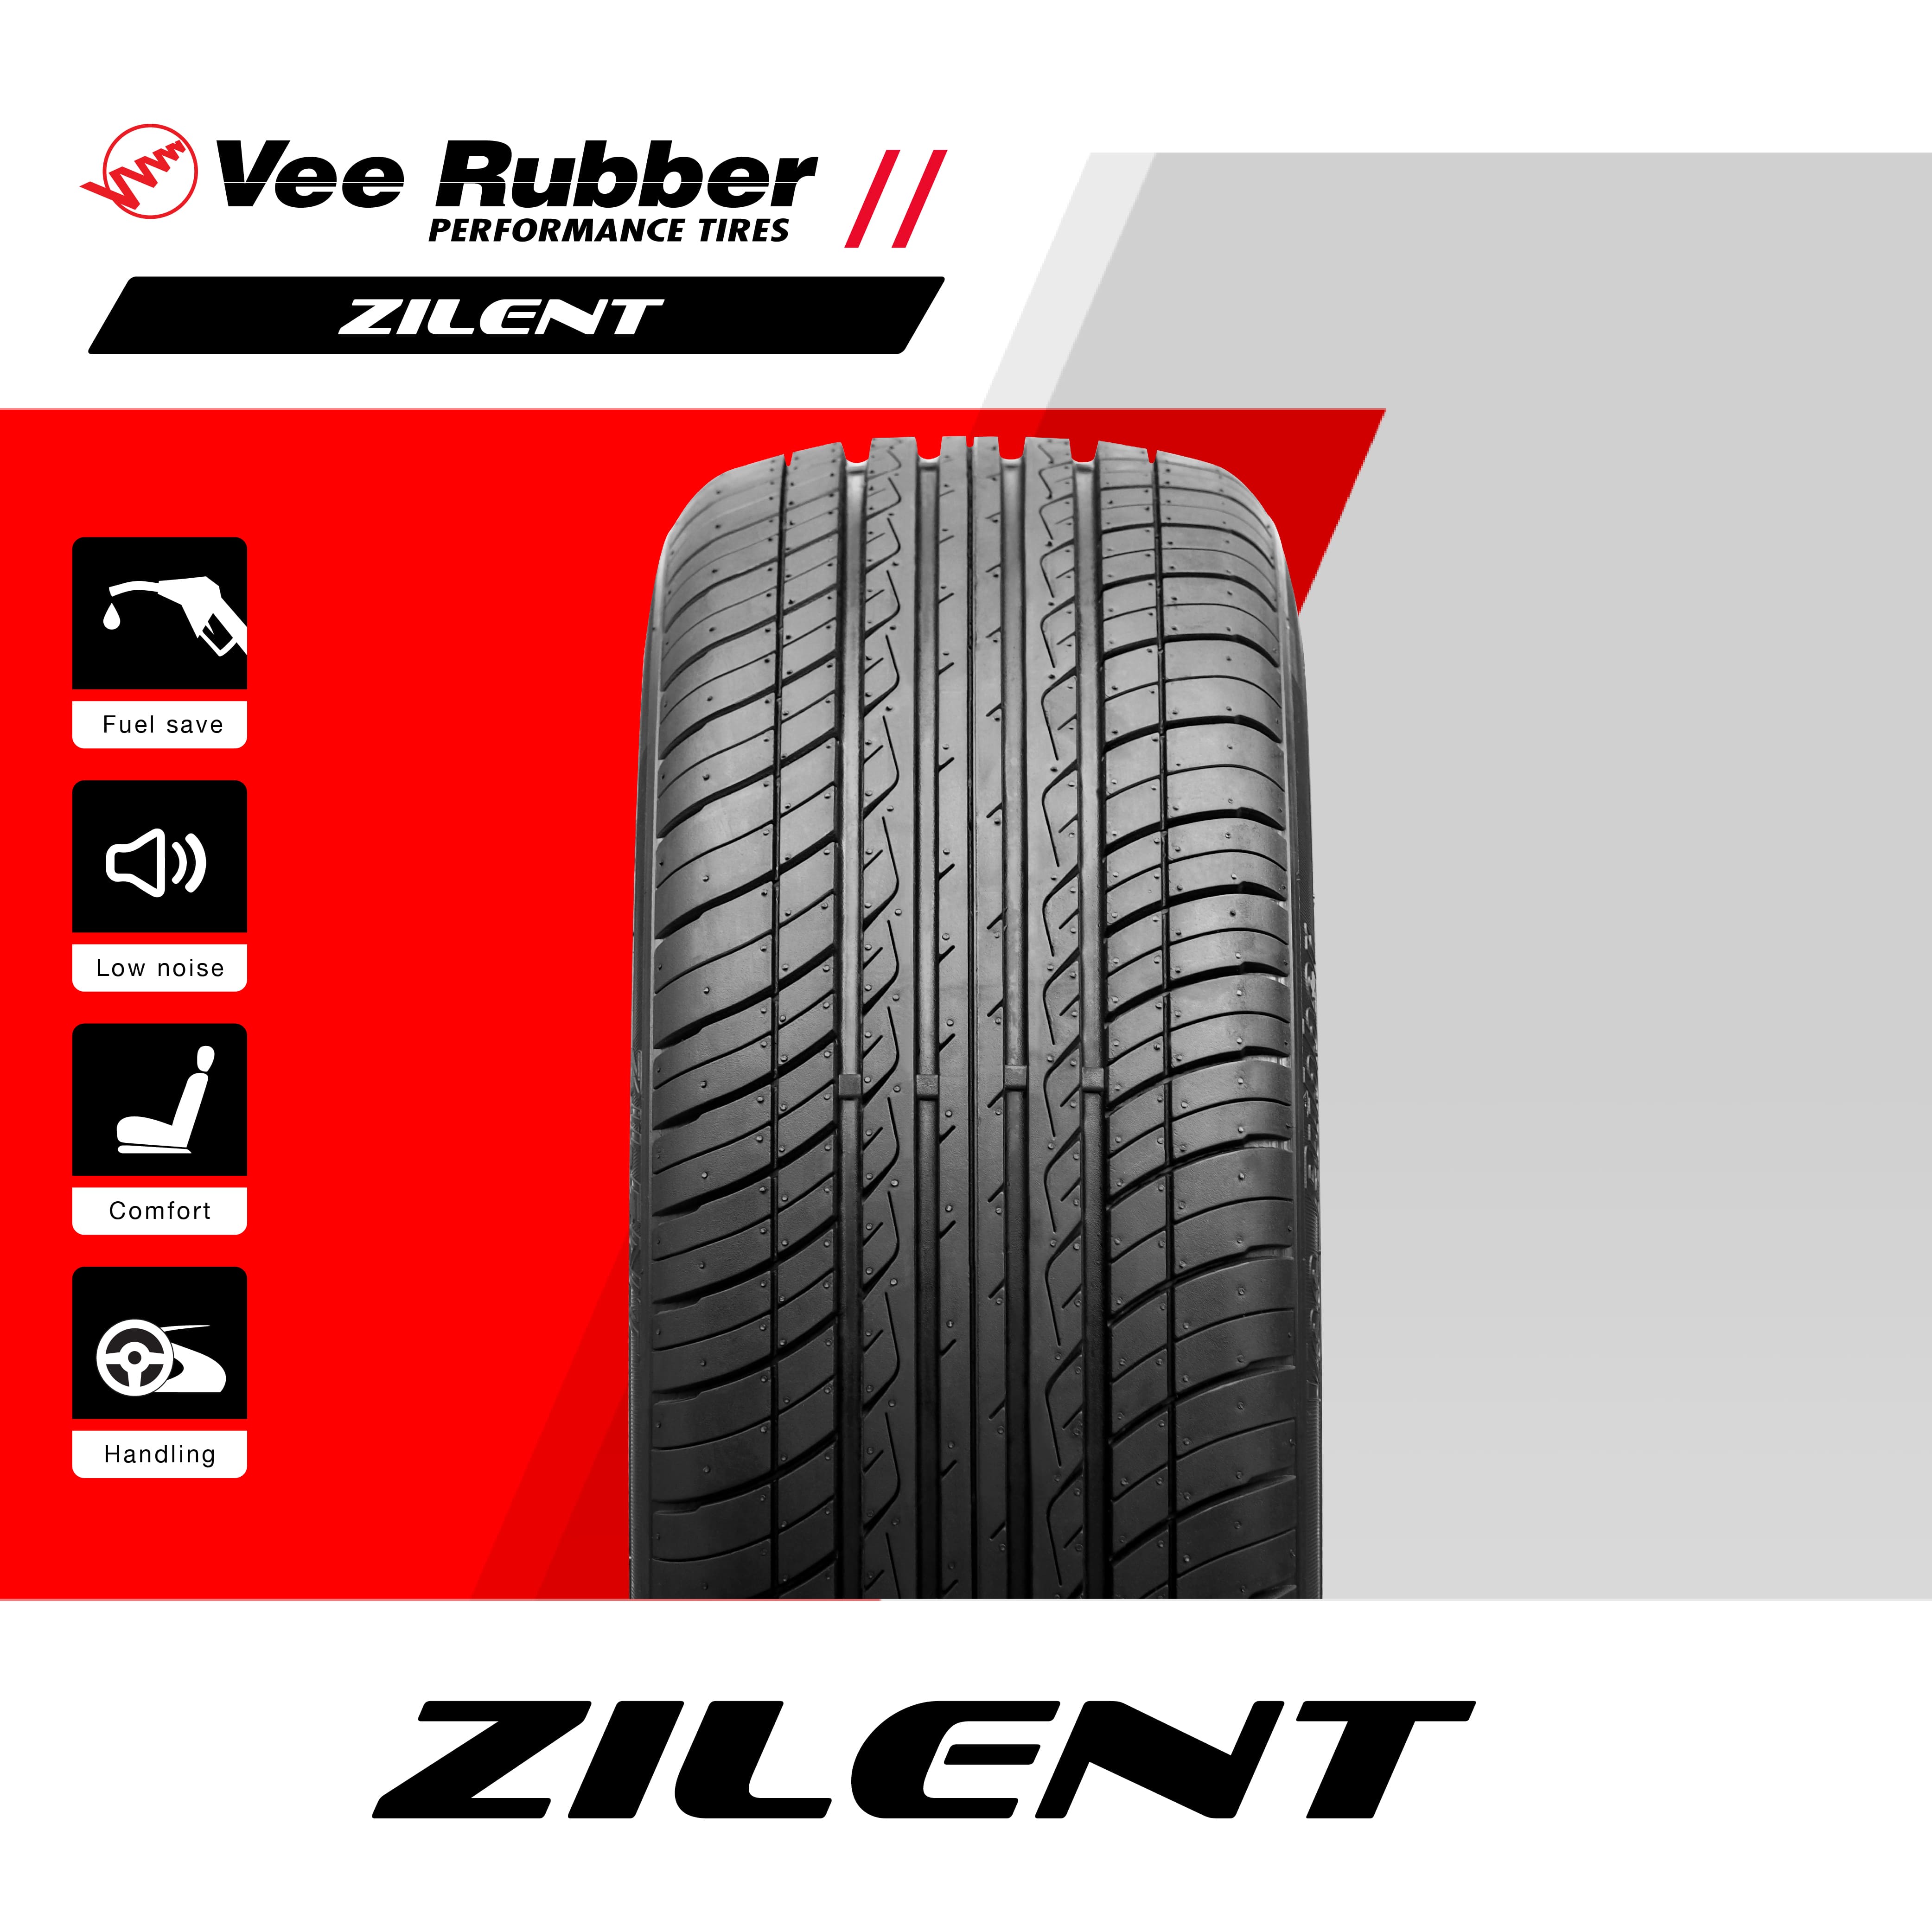 Vee Rubber (วีรับเบอร์) ยางรถยนต์ รุ่น ZILENT ล้อขอบ13,14,15,17 